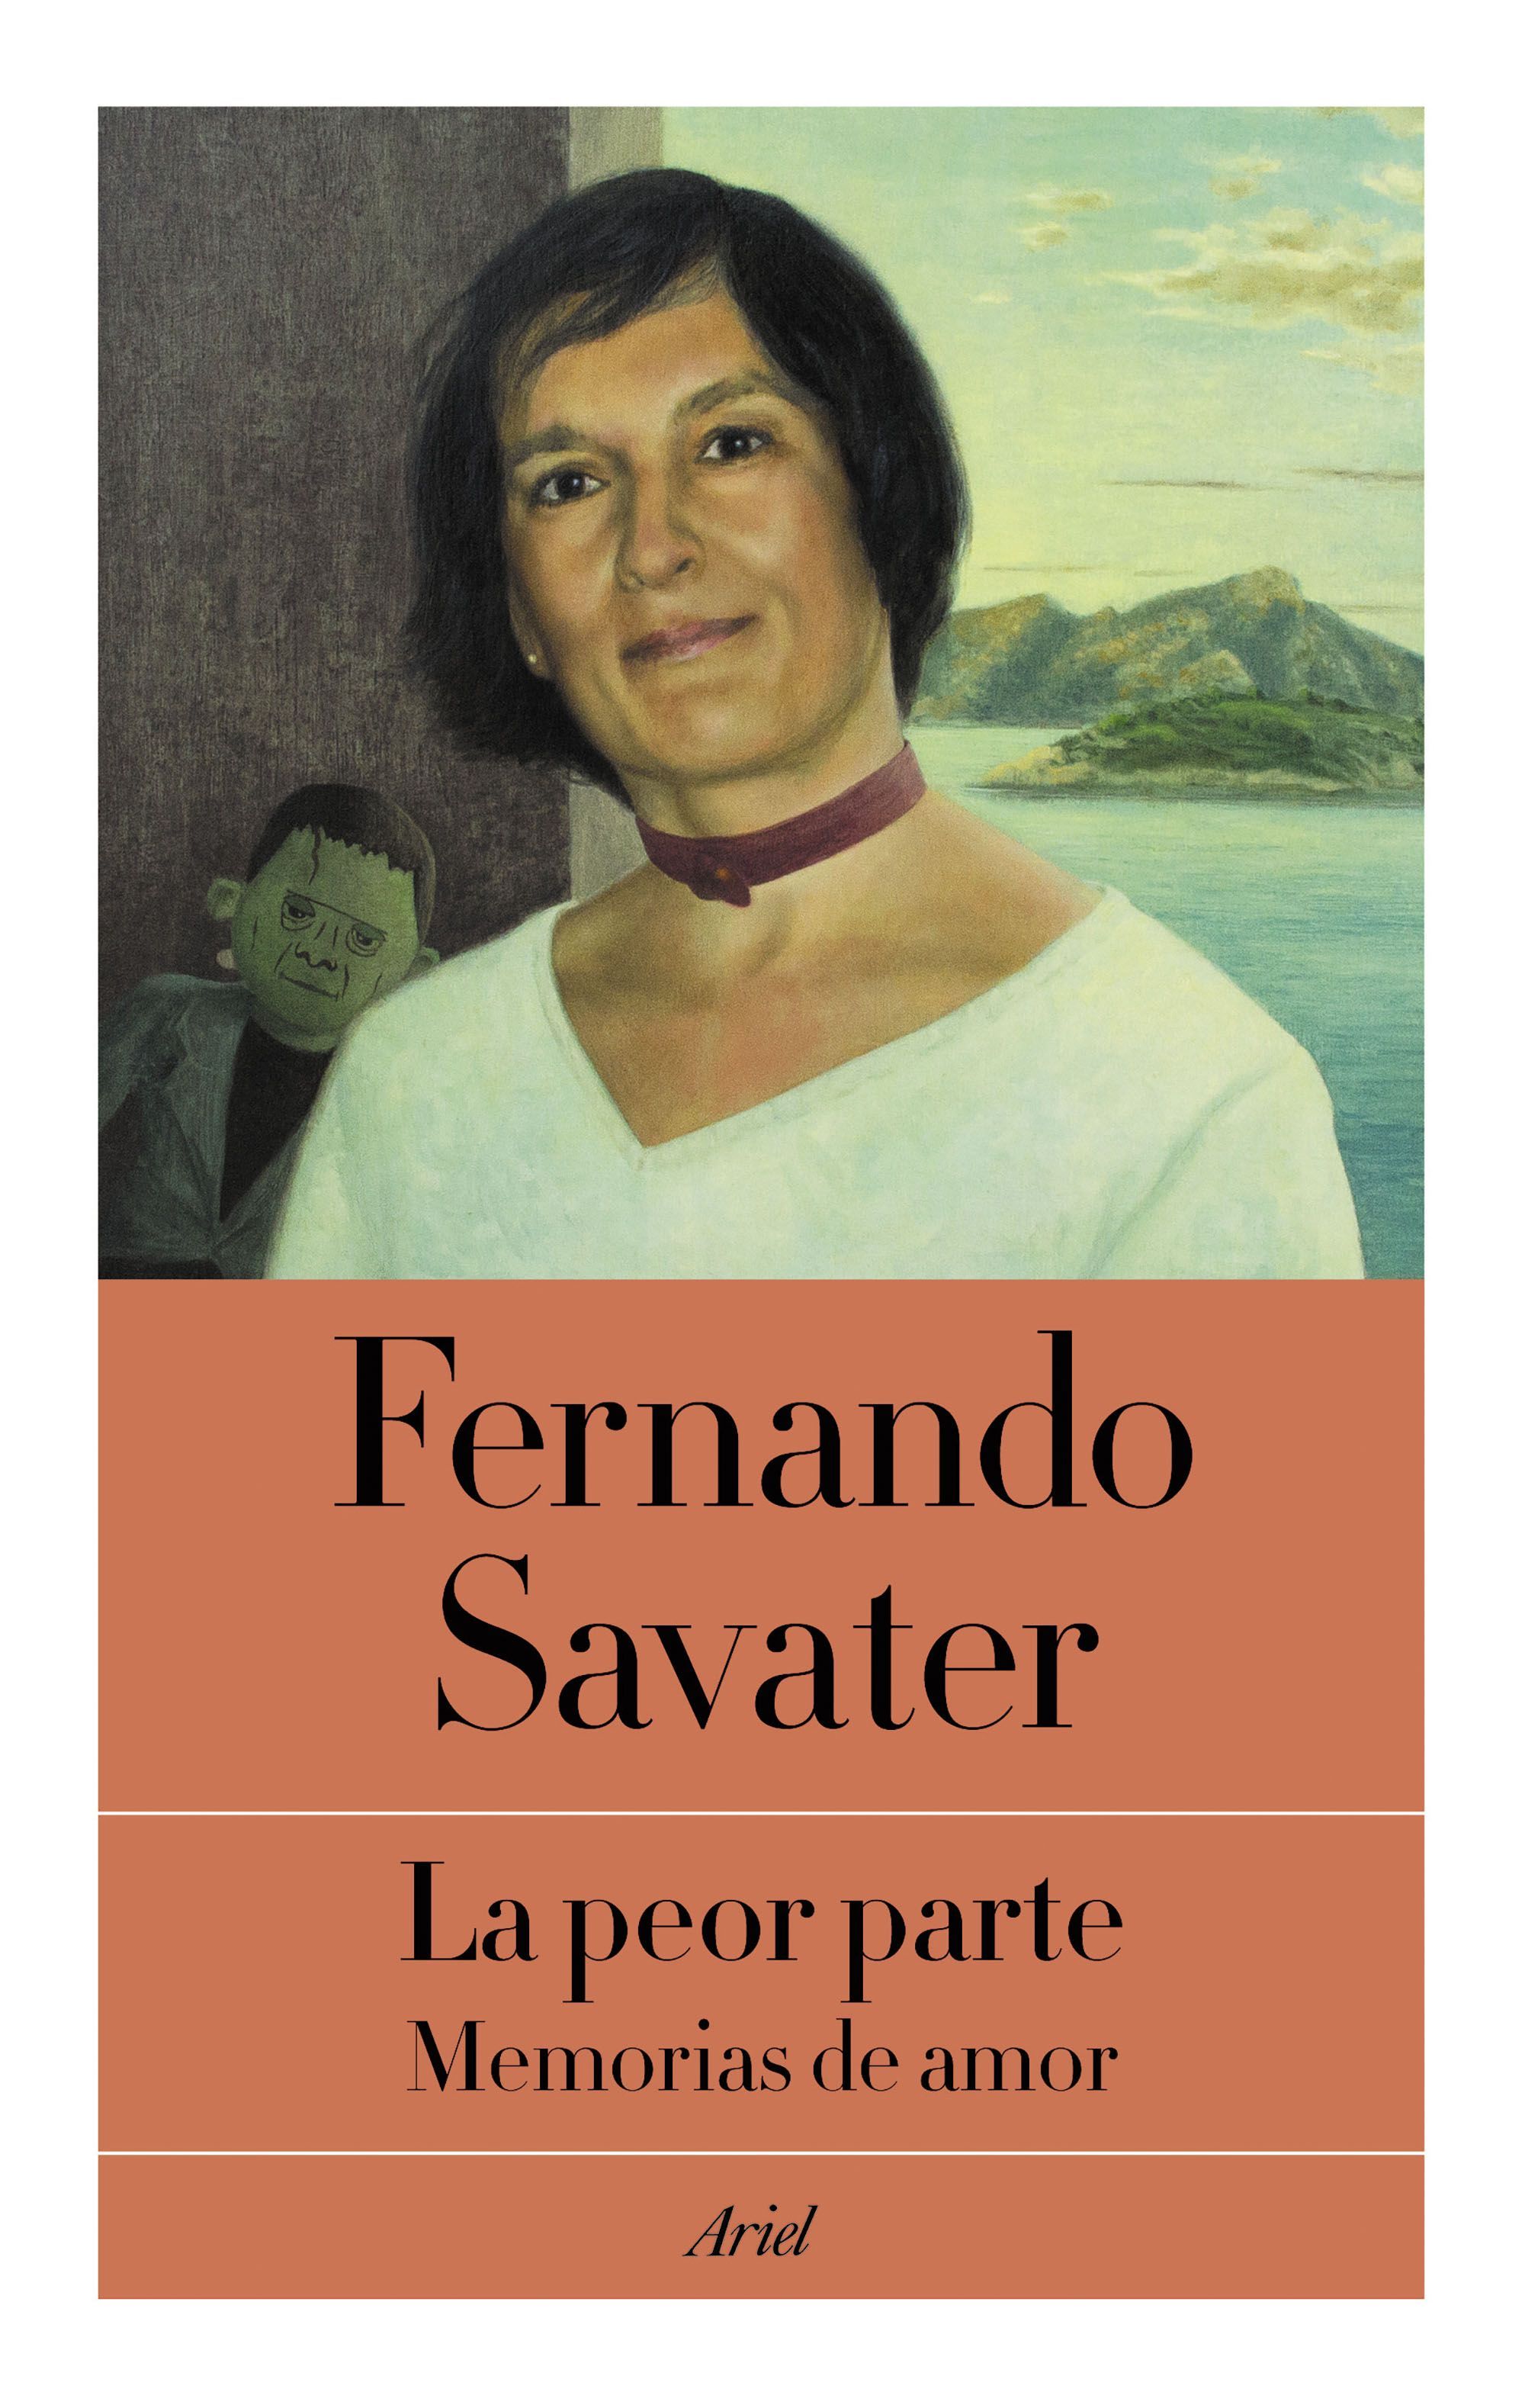 Fernando Savater publica uno de sus libros más íntimos: ‘La peor parte. Memorias de amor’